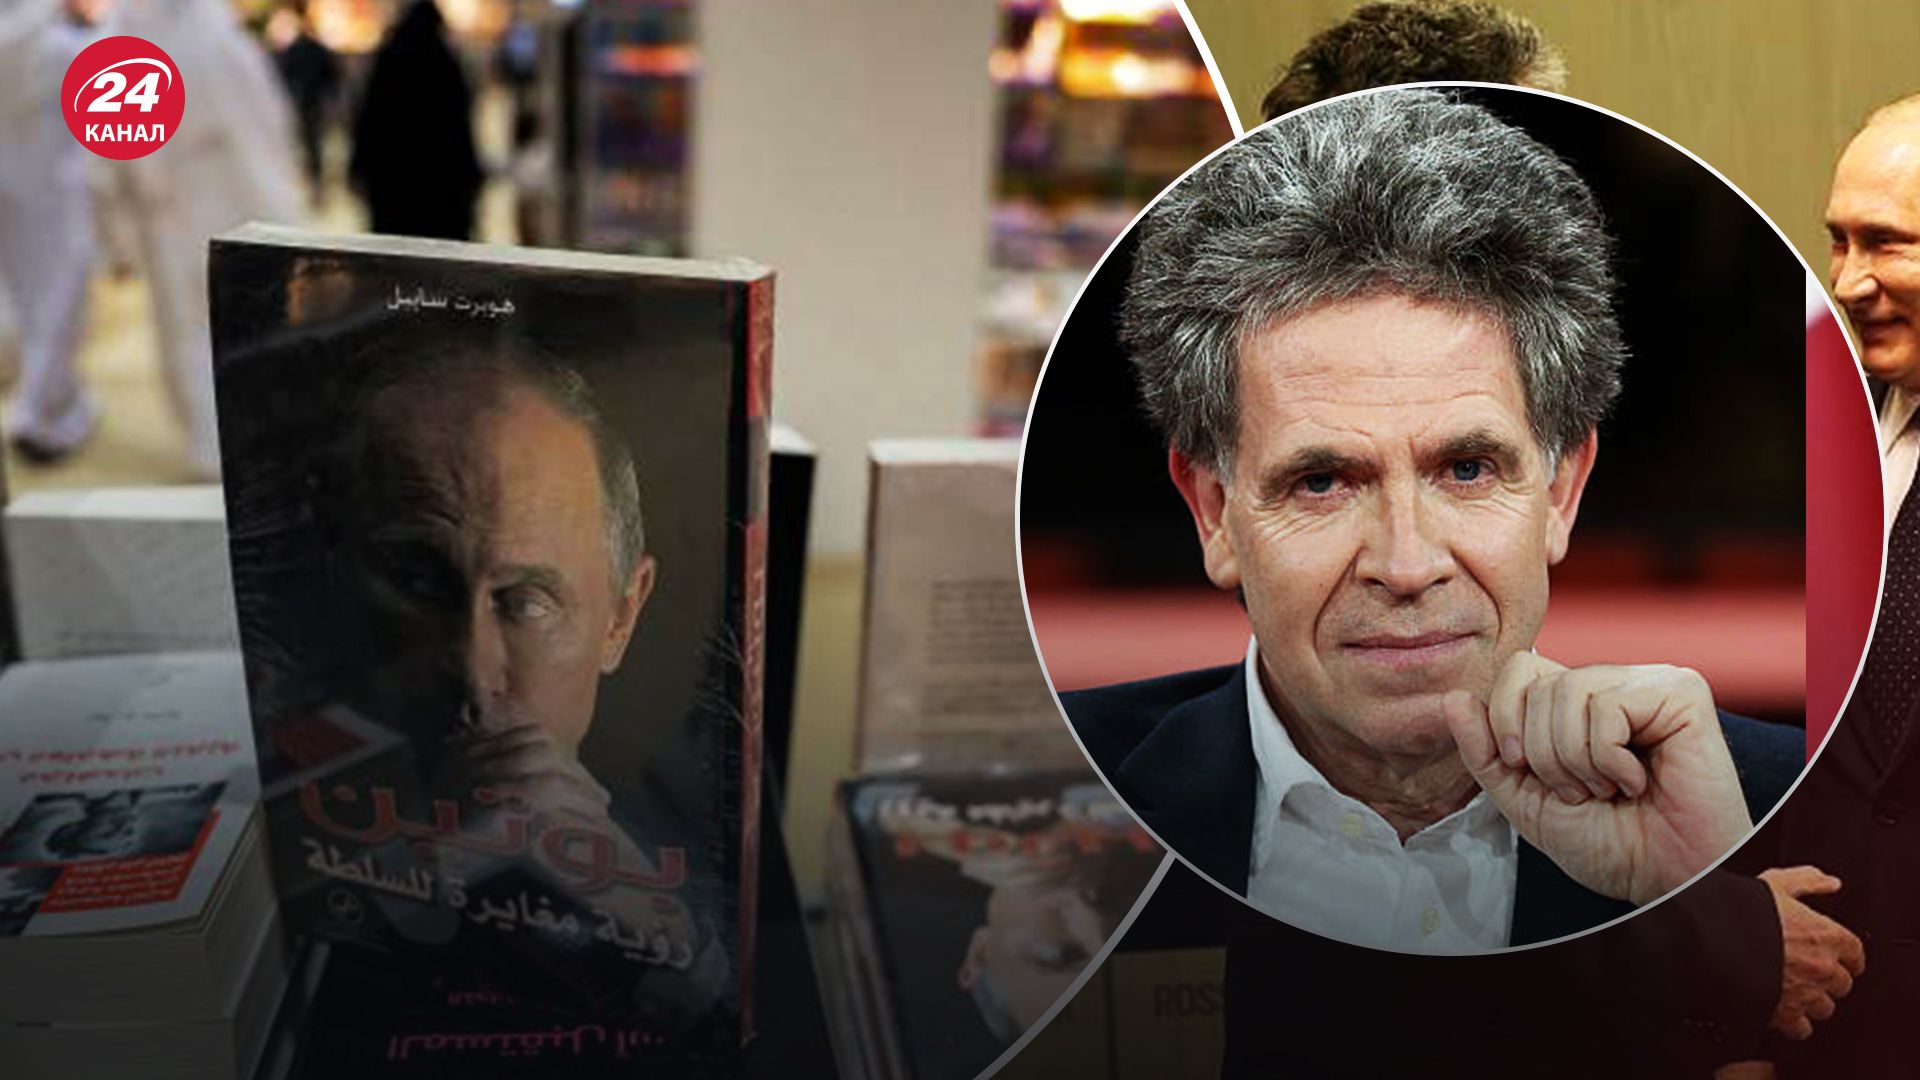 Губерт Зайпель и книга о Путине